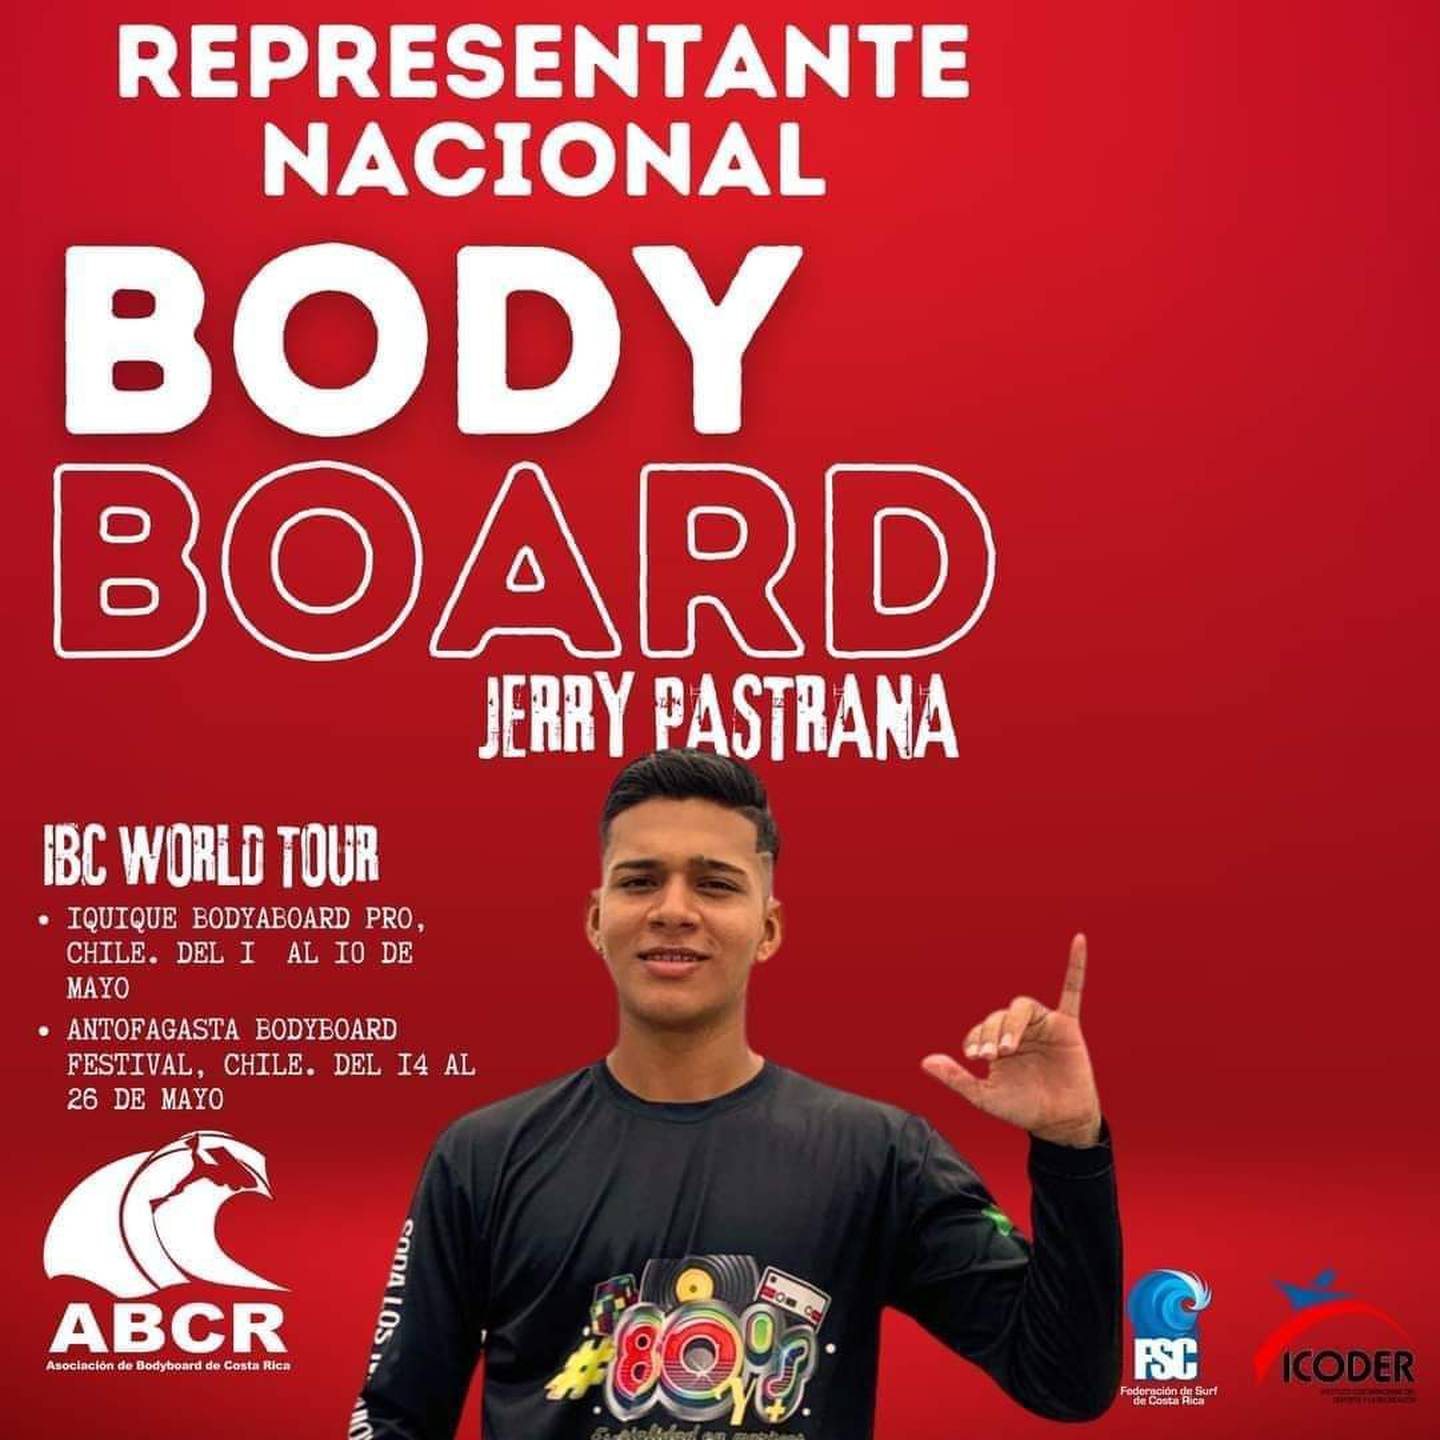 Jerry Pastrana
Selección Nacional  Bodyboard
Tour Mundial Iquique, Chile
6 de mayo del 2024
Cortesía